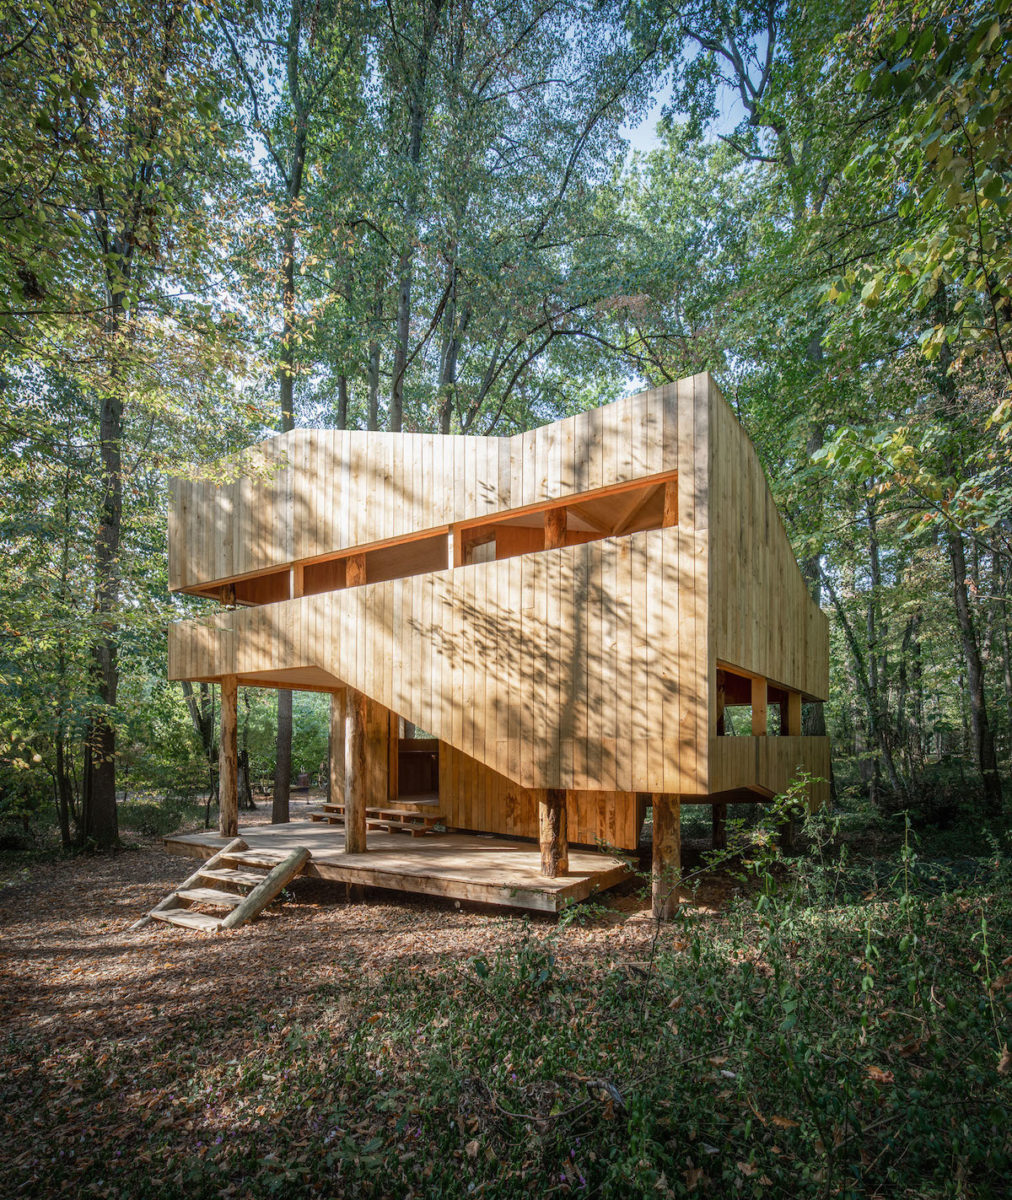 Dřevěný dům